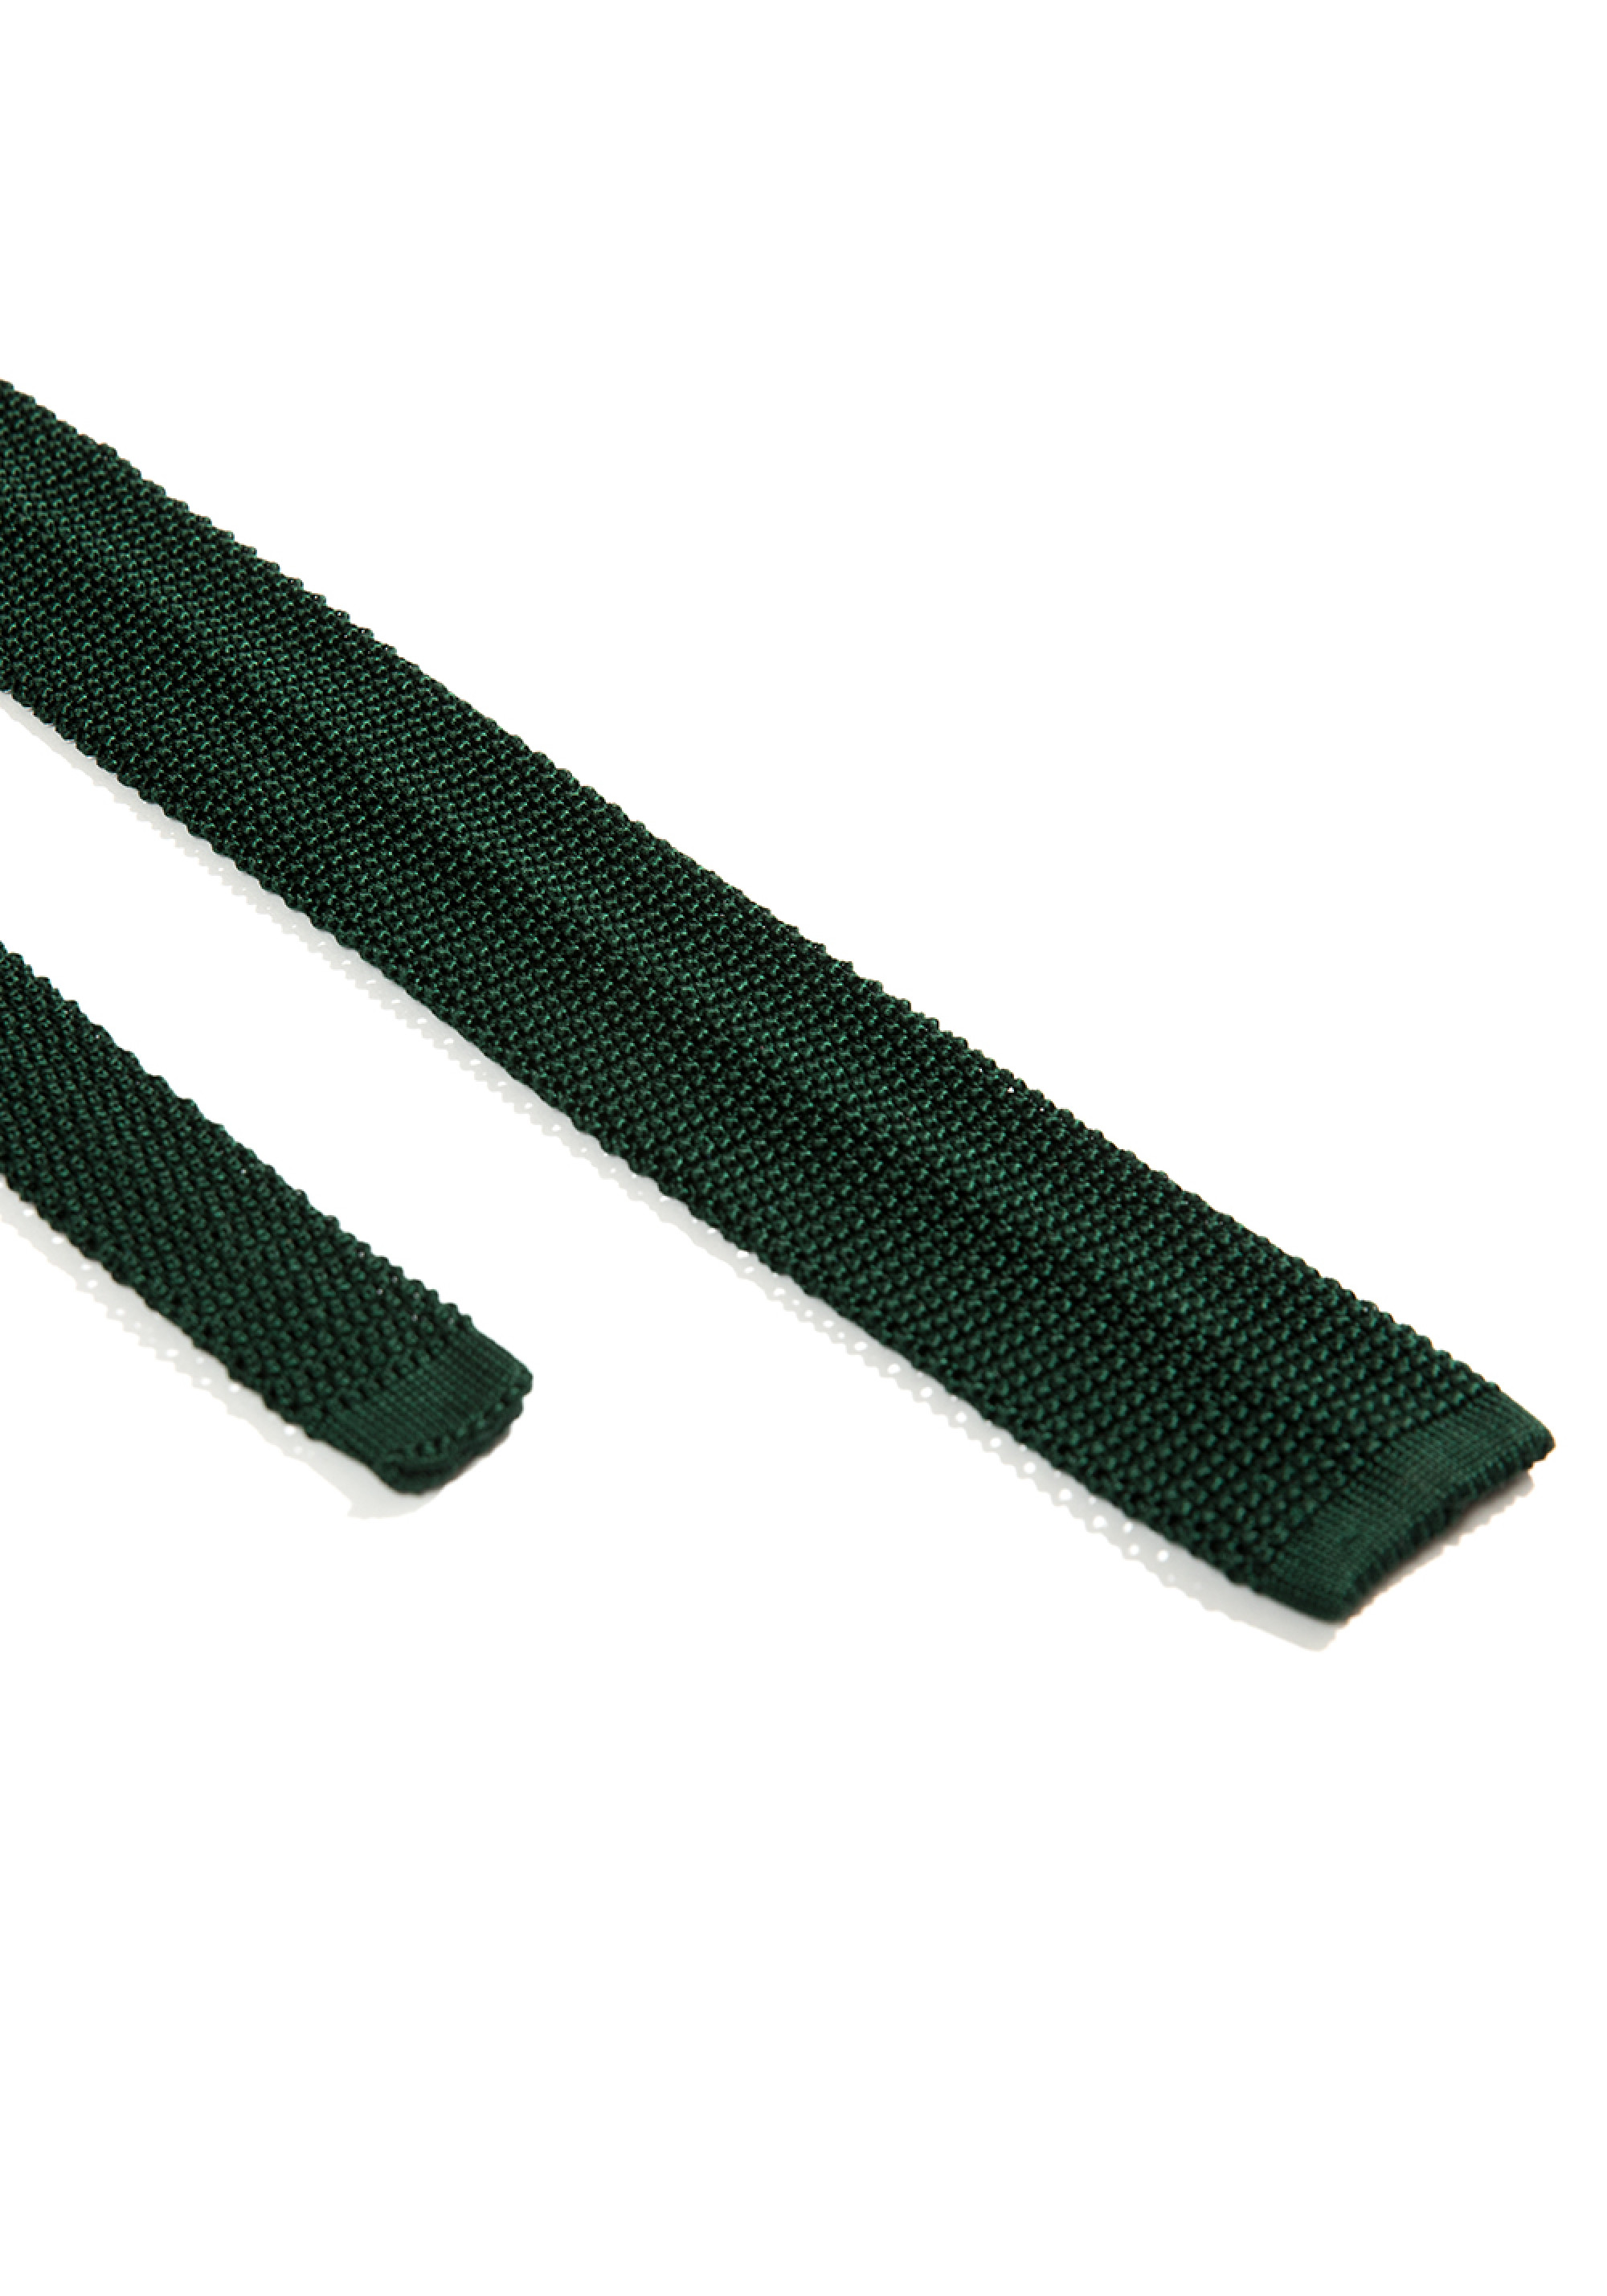 Cravata verde inchis impletita 